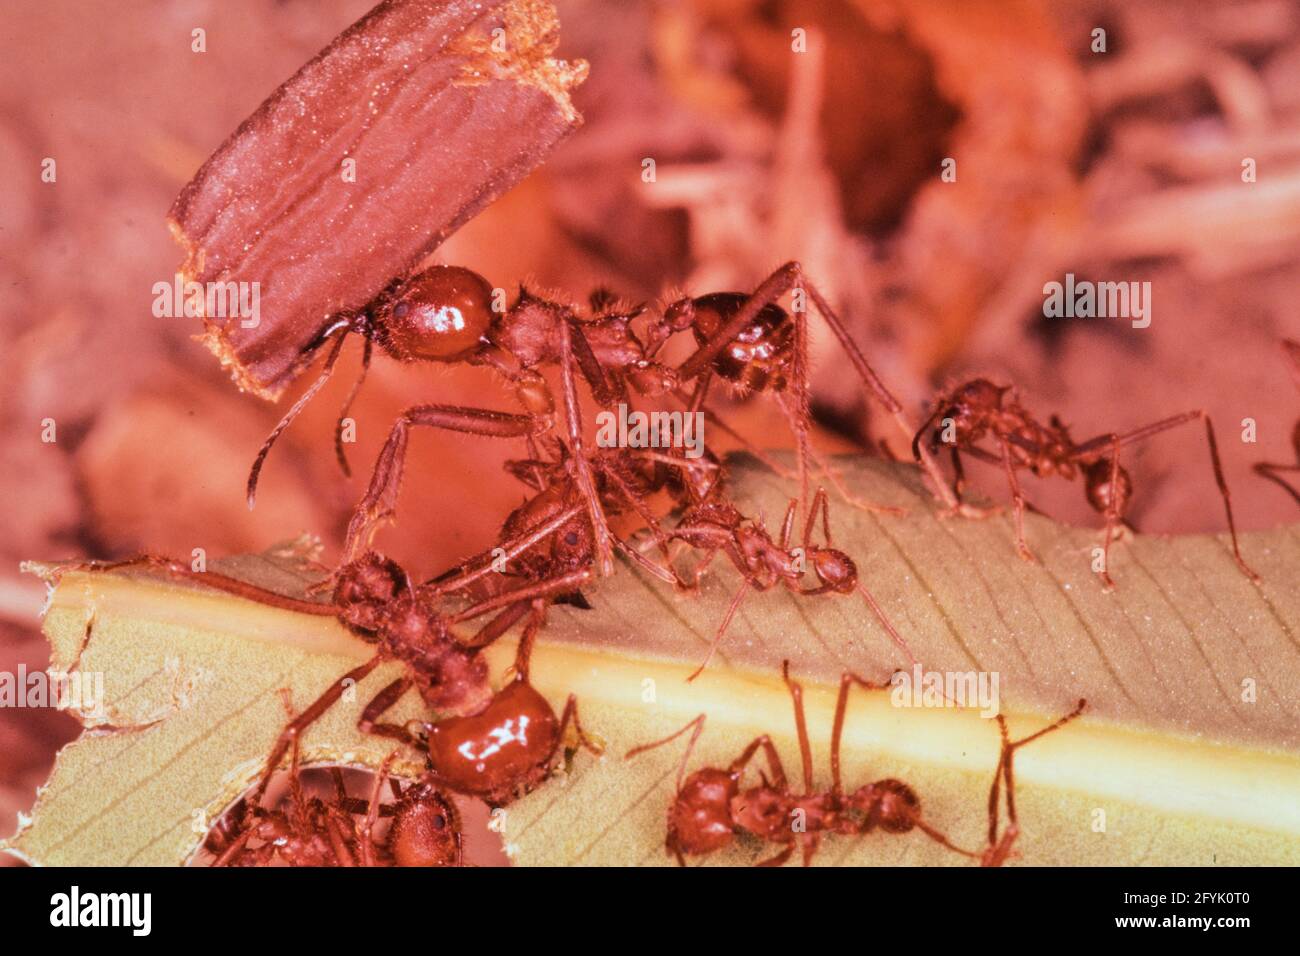 Les fourmis de travailleurs de feuilles transportent des morceaux de  feuille coupés vers leur colonie pour cultiver la nourriture. Ils peuvent  porter 20 fois leur propre poids. Mexique Photo Stock - Alamy